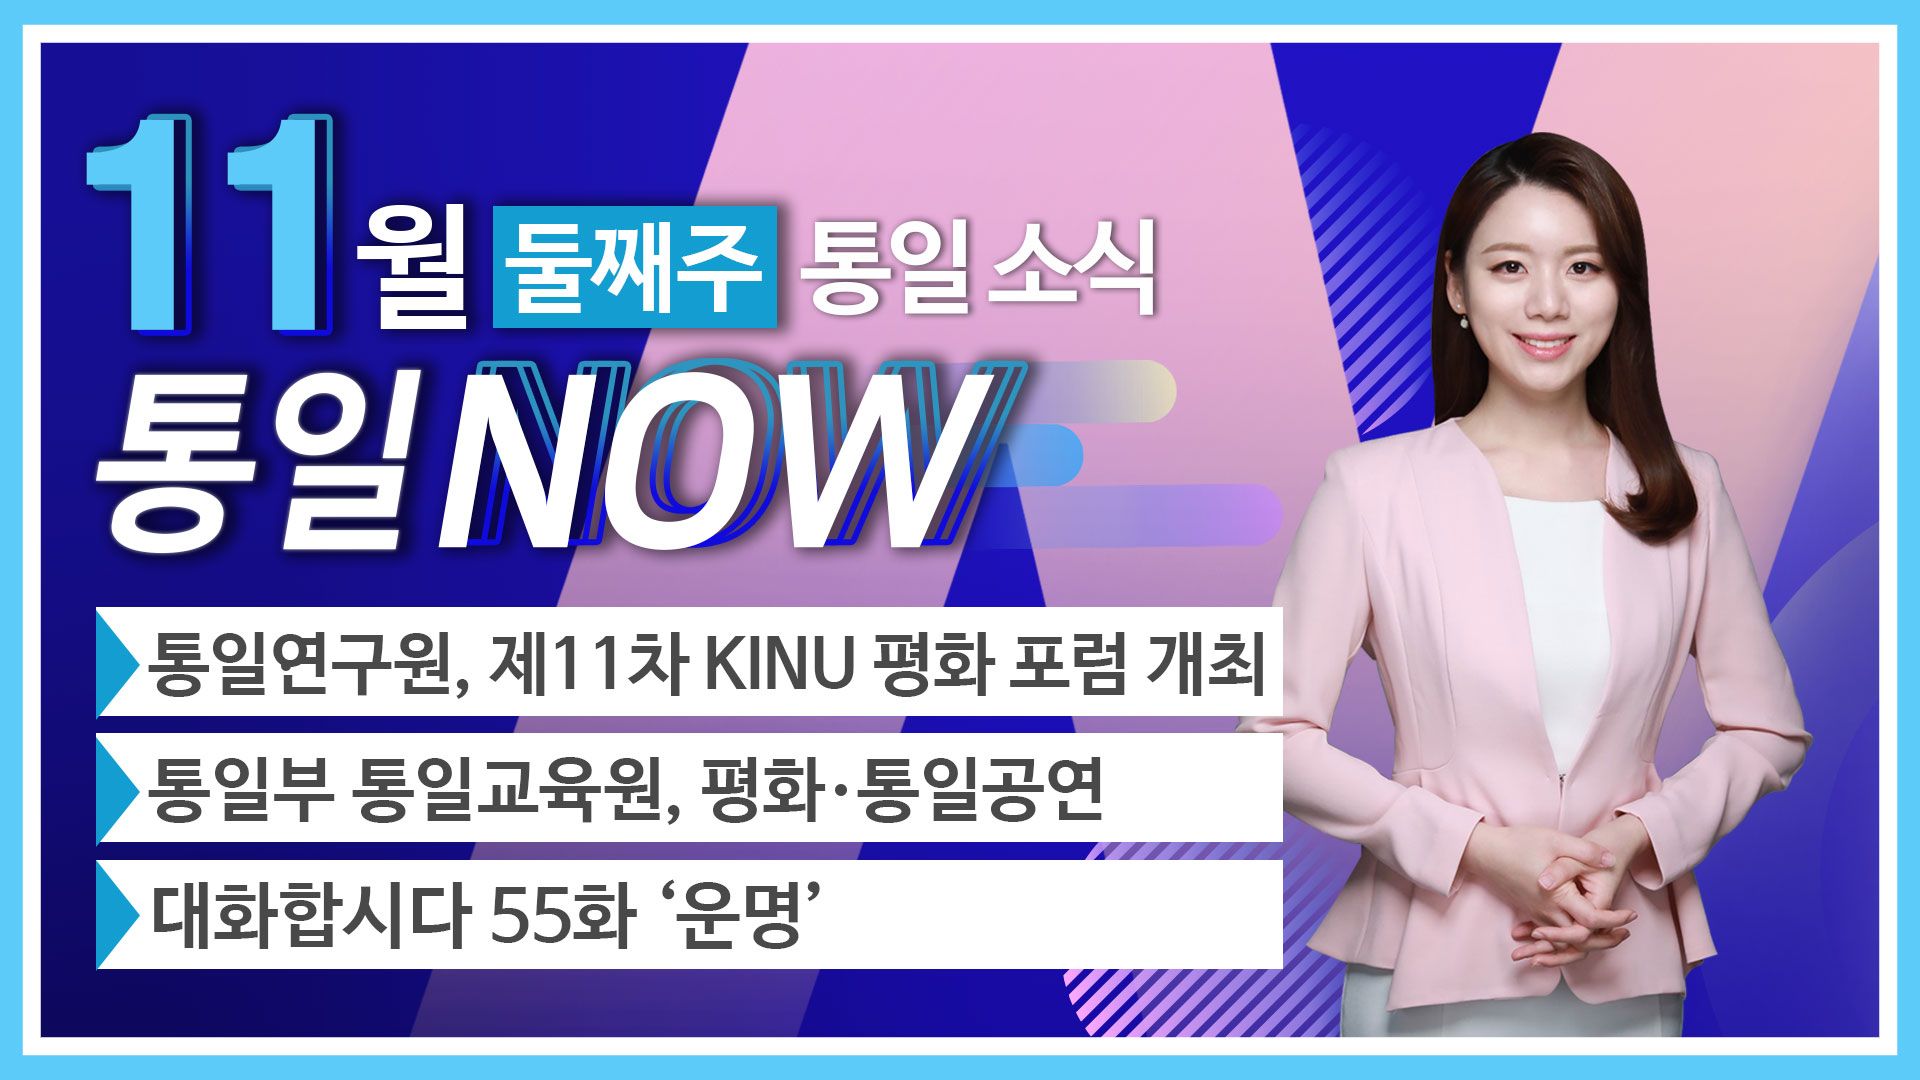 [통일NOW]통일연구원¸ 제11차 KINU 평화 포럼 개최 (2019년 11월 둘째 주 ) 